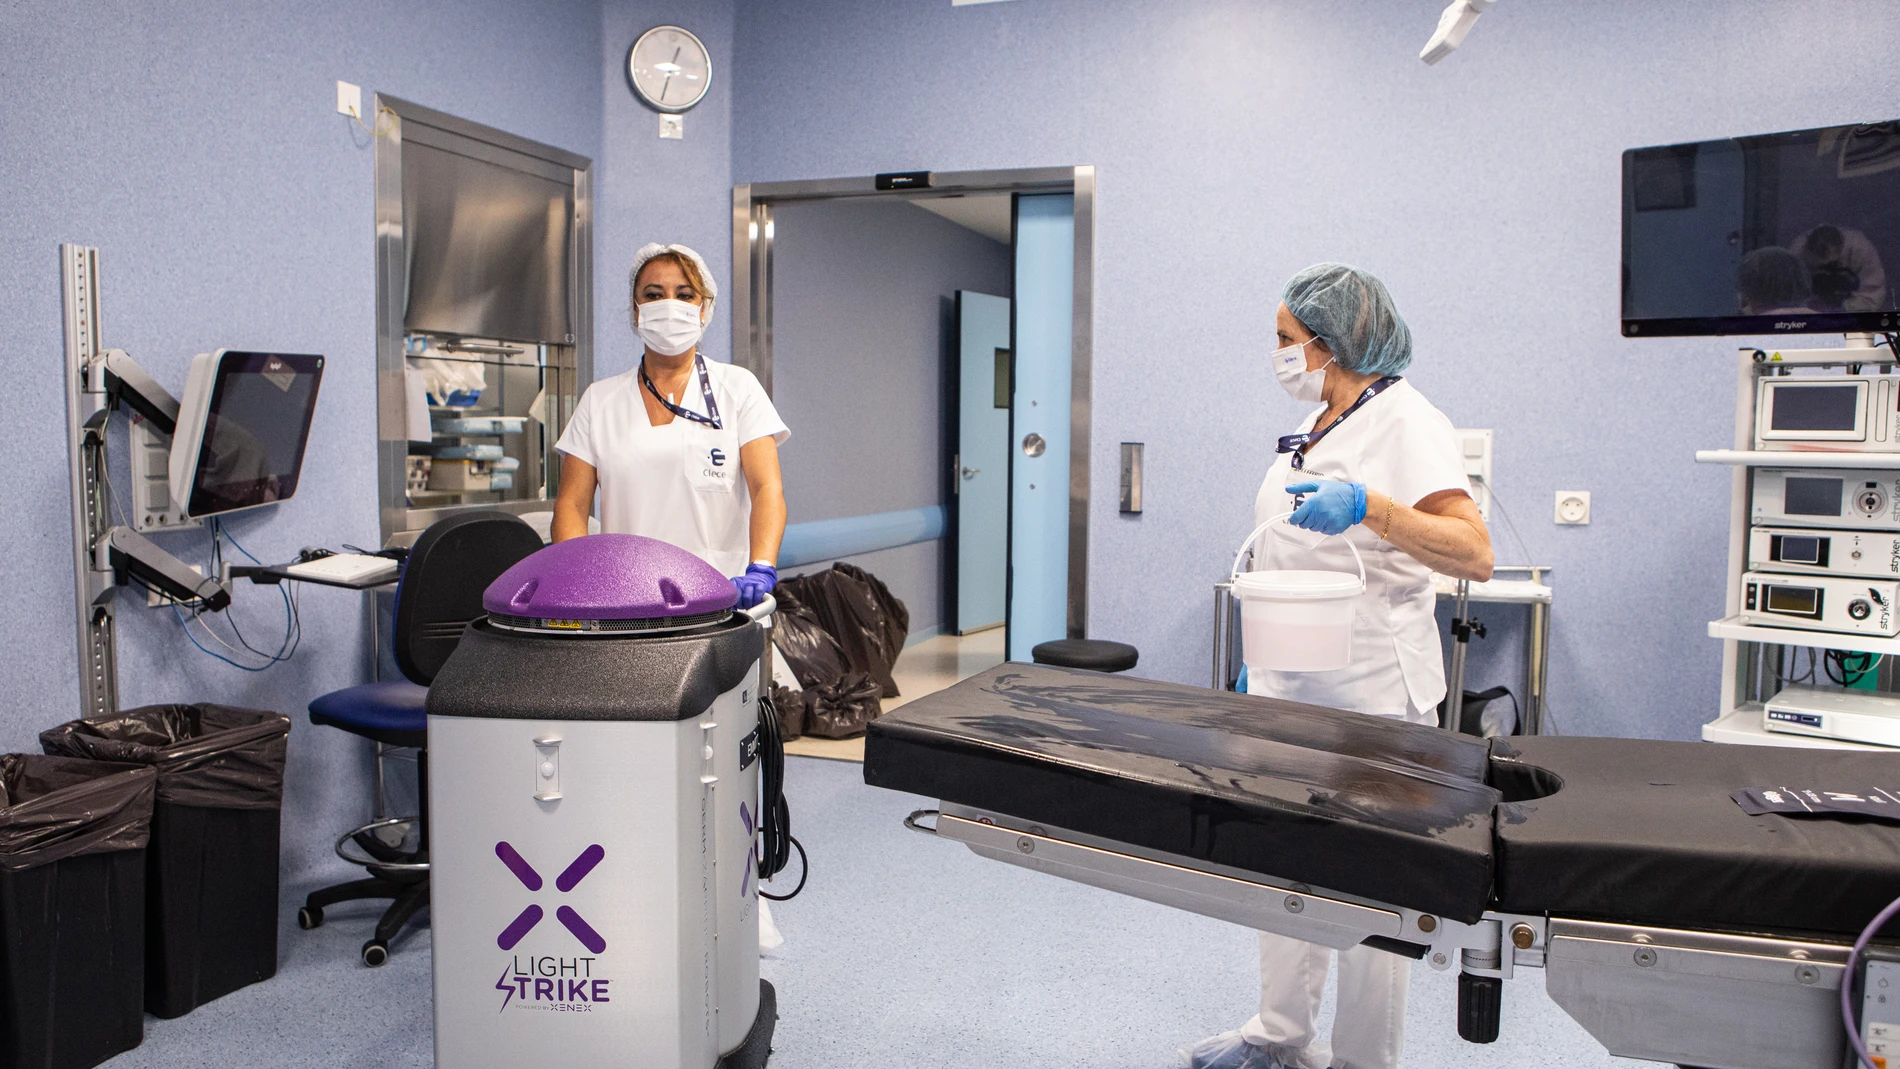 El robot Xenex utiliza luz ultravioleta para destruir microorganismos patógenos en pocos minutos.